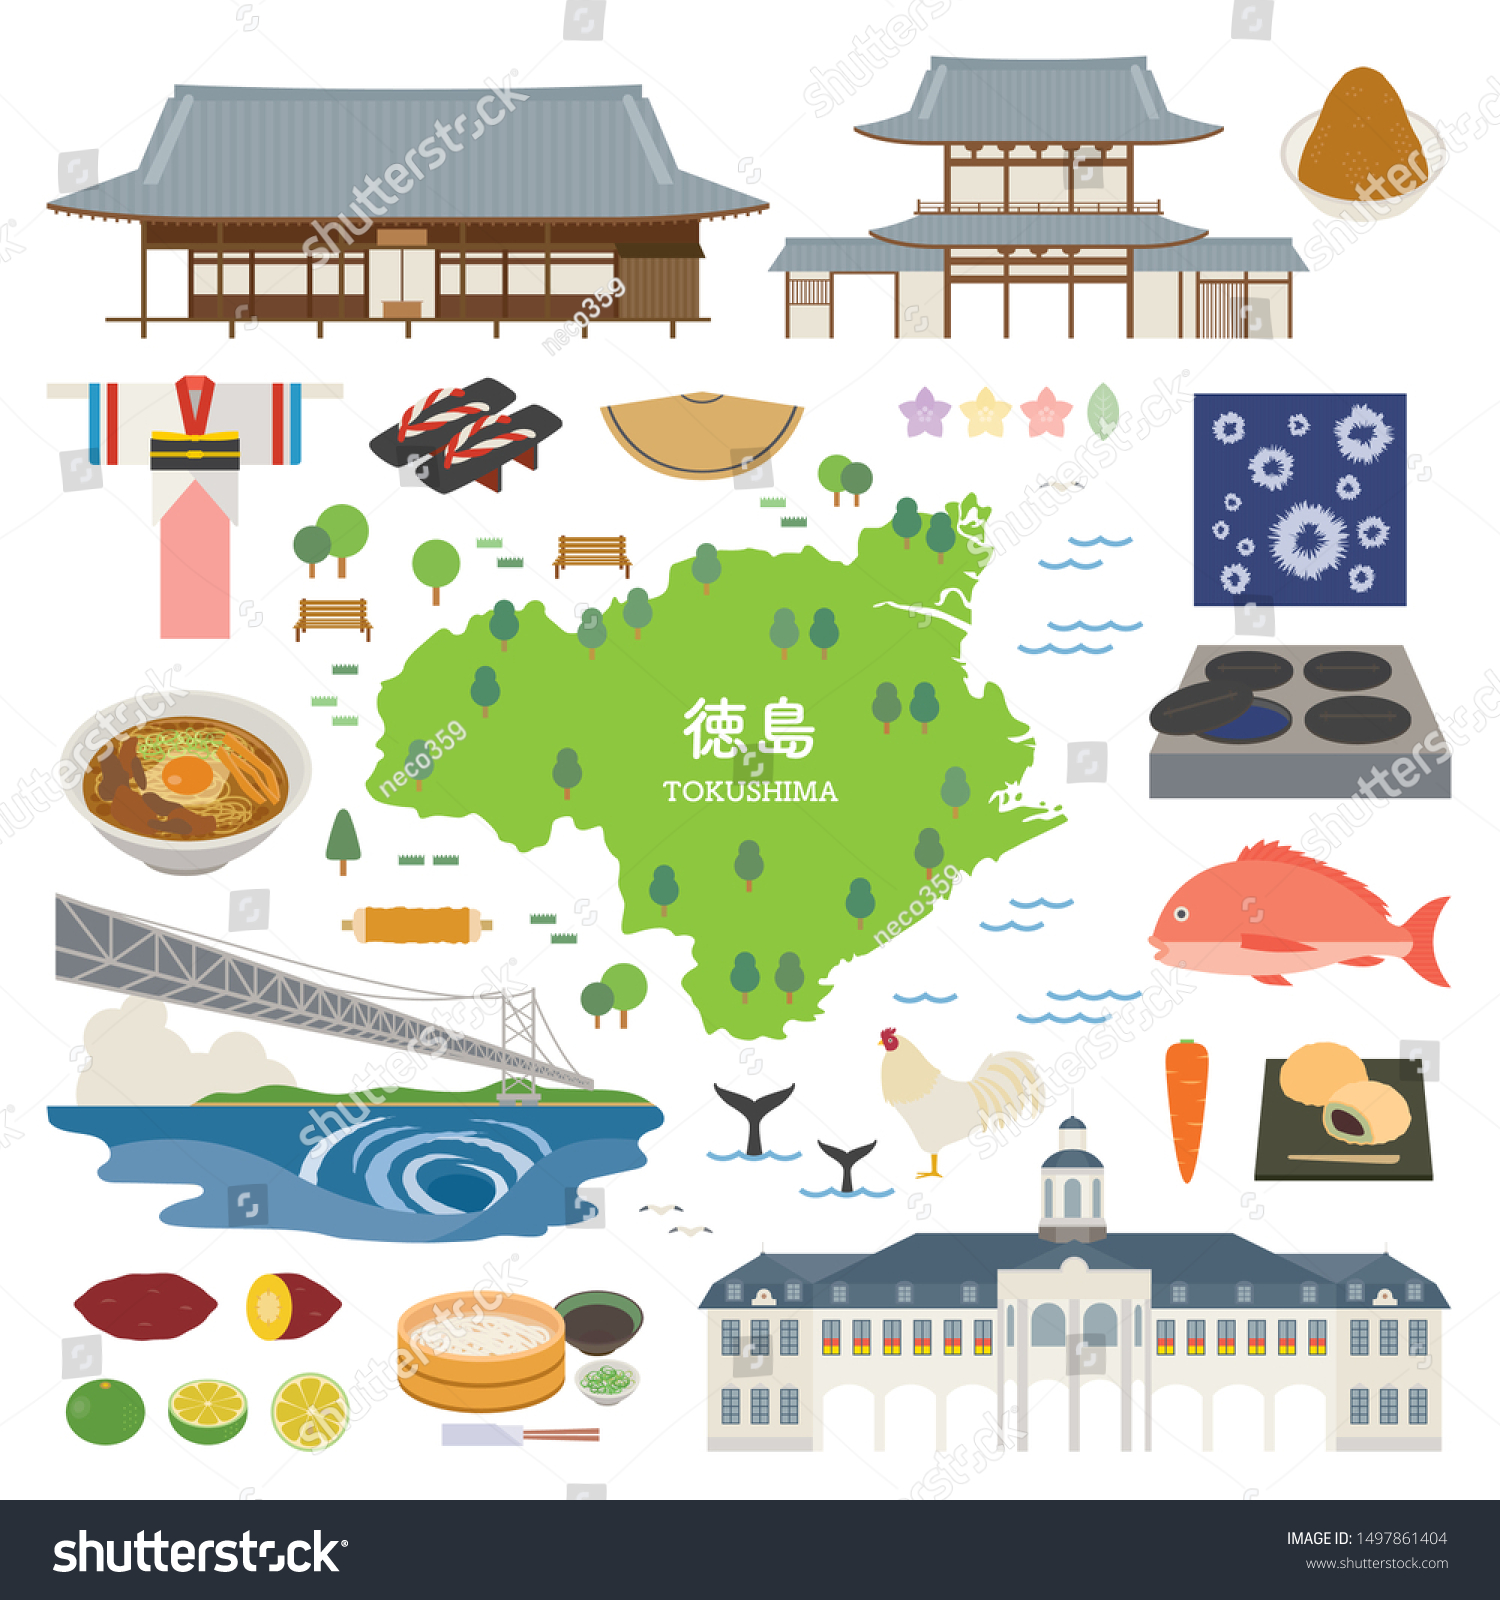 SVG of Illustration of Tokushima in Japan svg